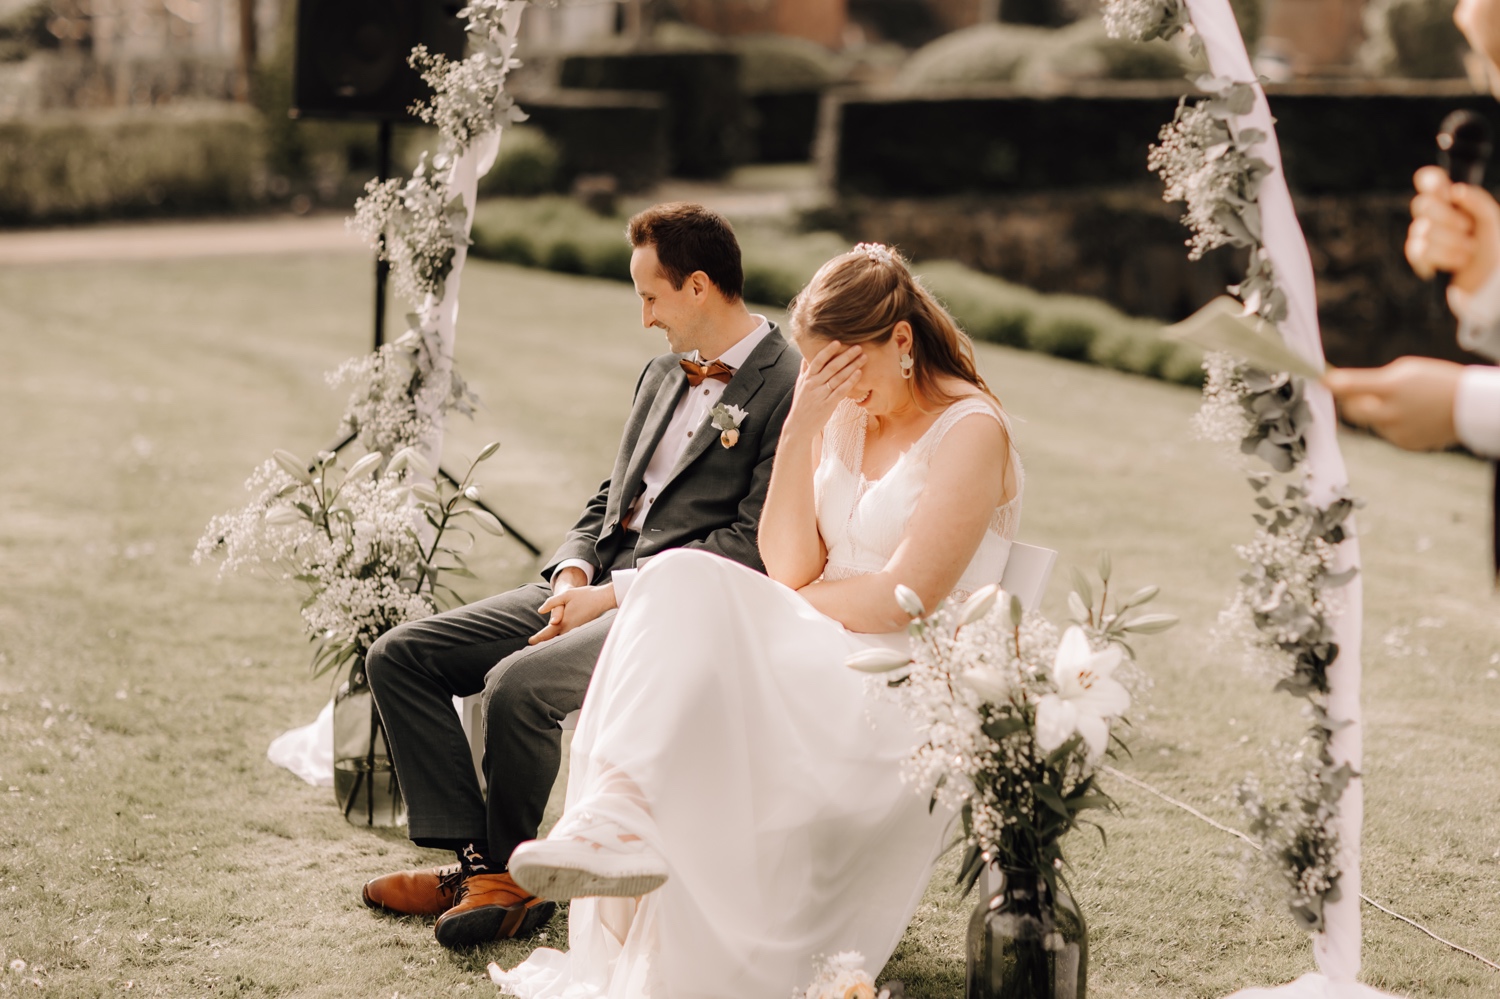 Huwelijksfotograaf Limburg - bruid schaamt zich tijdens grappig moment